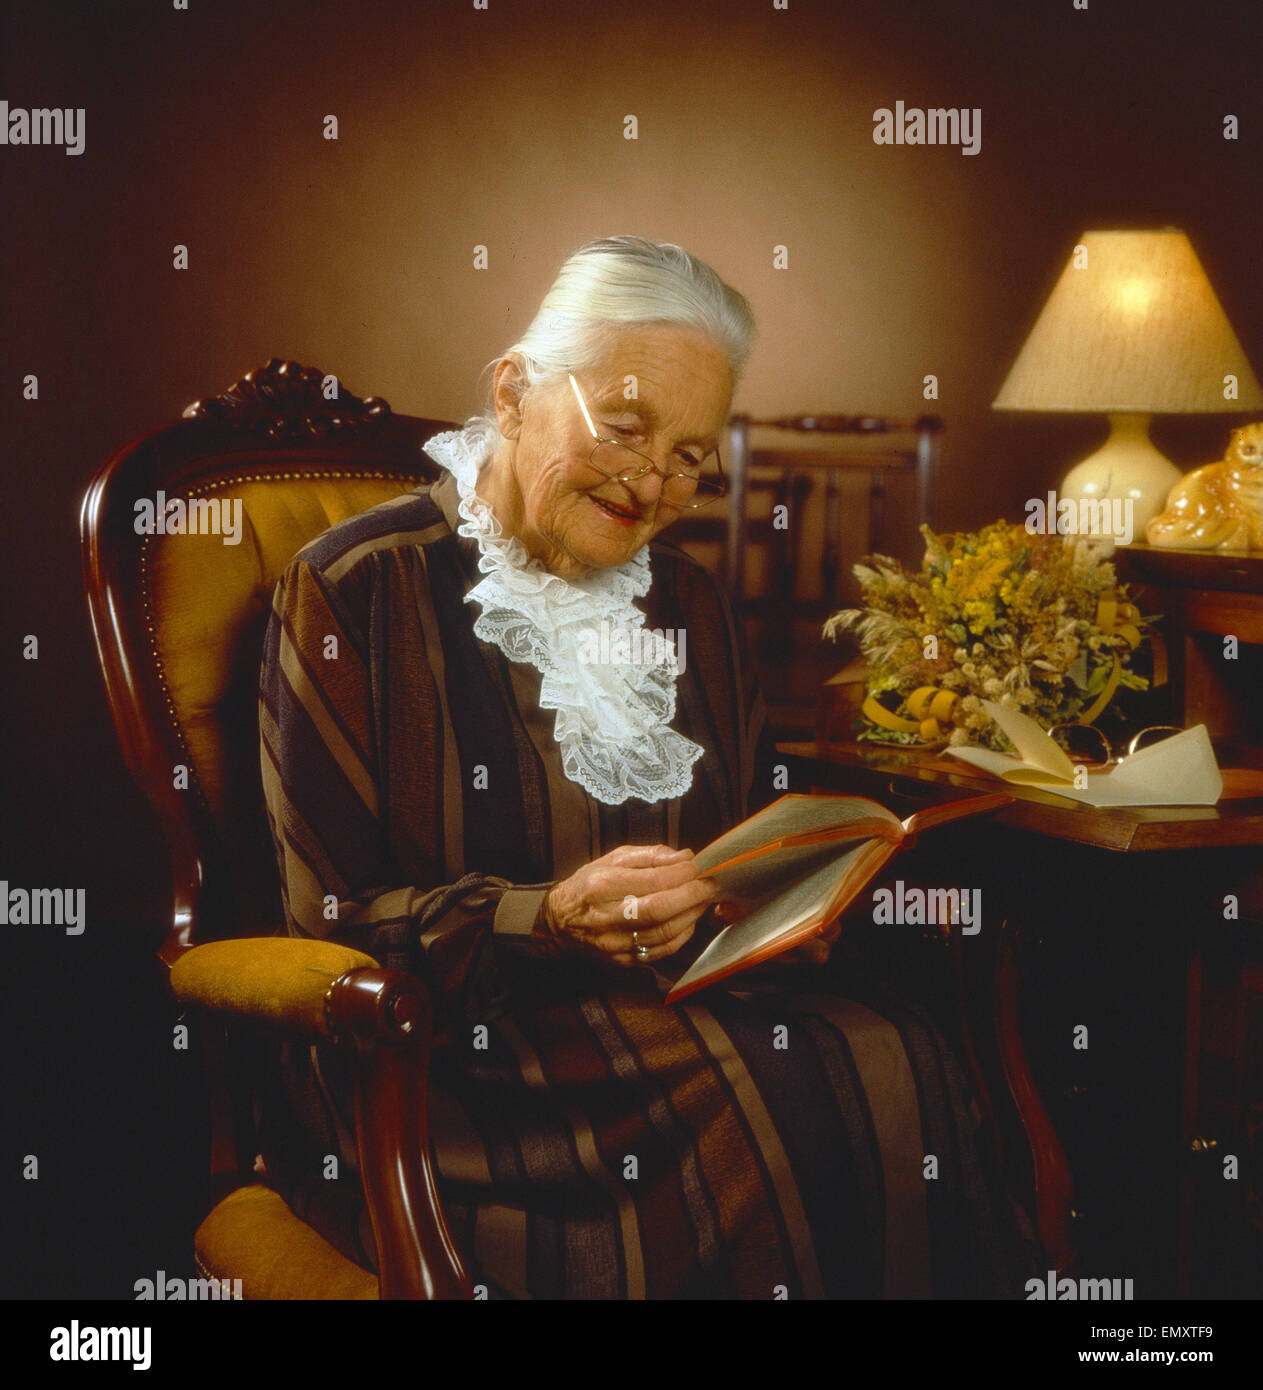 Seniorin sitzt in Sessel im Wohnzimmer und liest ein Buch, abends Stock Photo